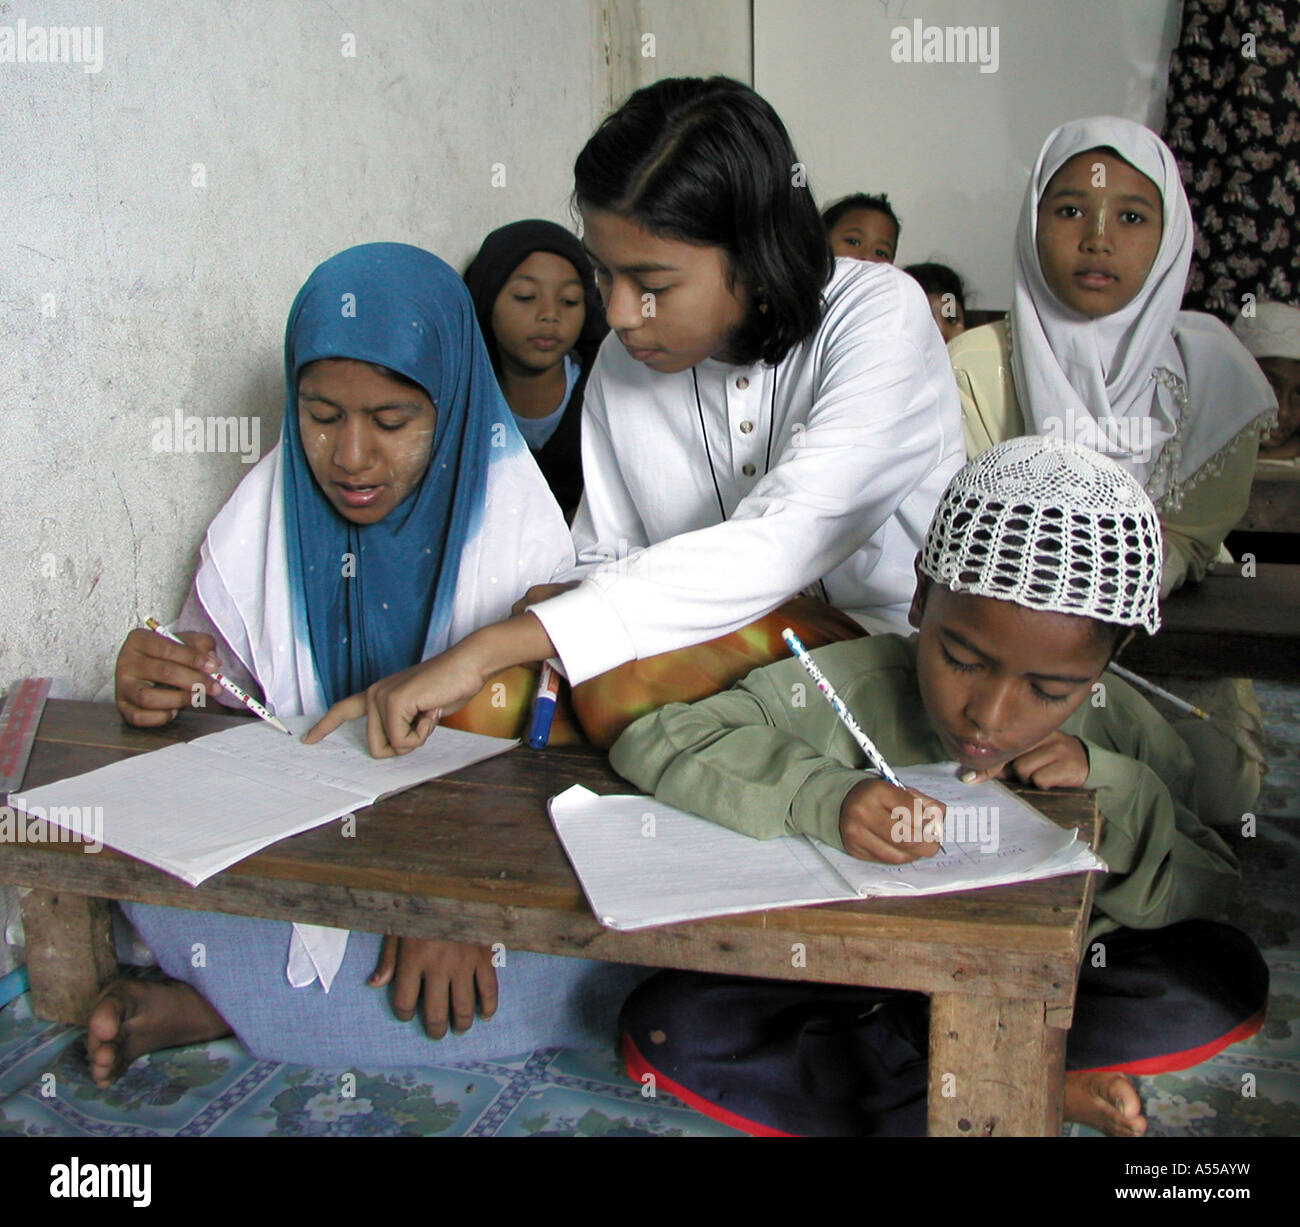 Ip Painet2789 9687 bambini thailandia musulmana della scuola per i profughi birmani mae sot paese nazione in via di sviluppo meno economicamente Foto Stock